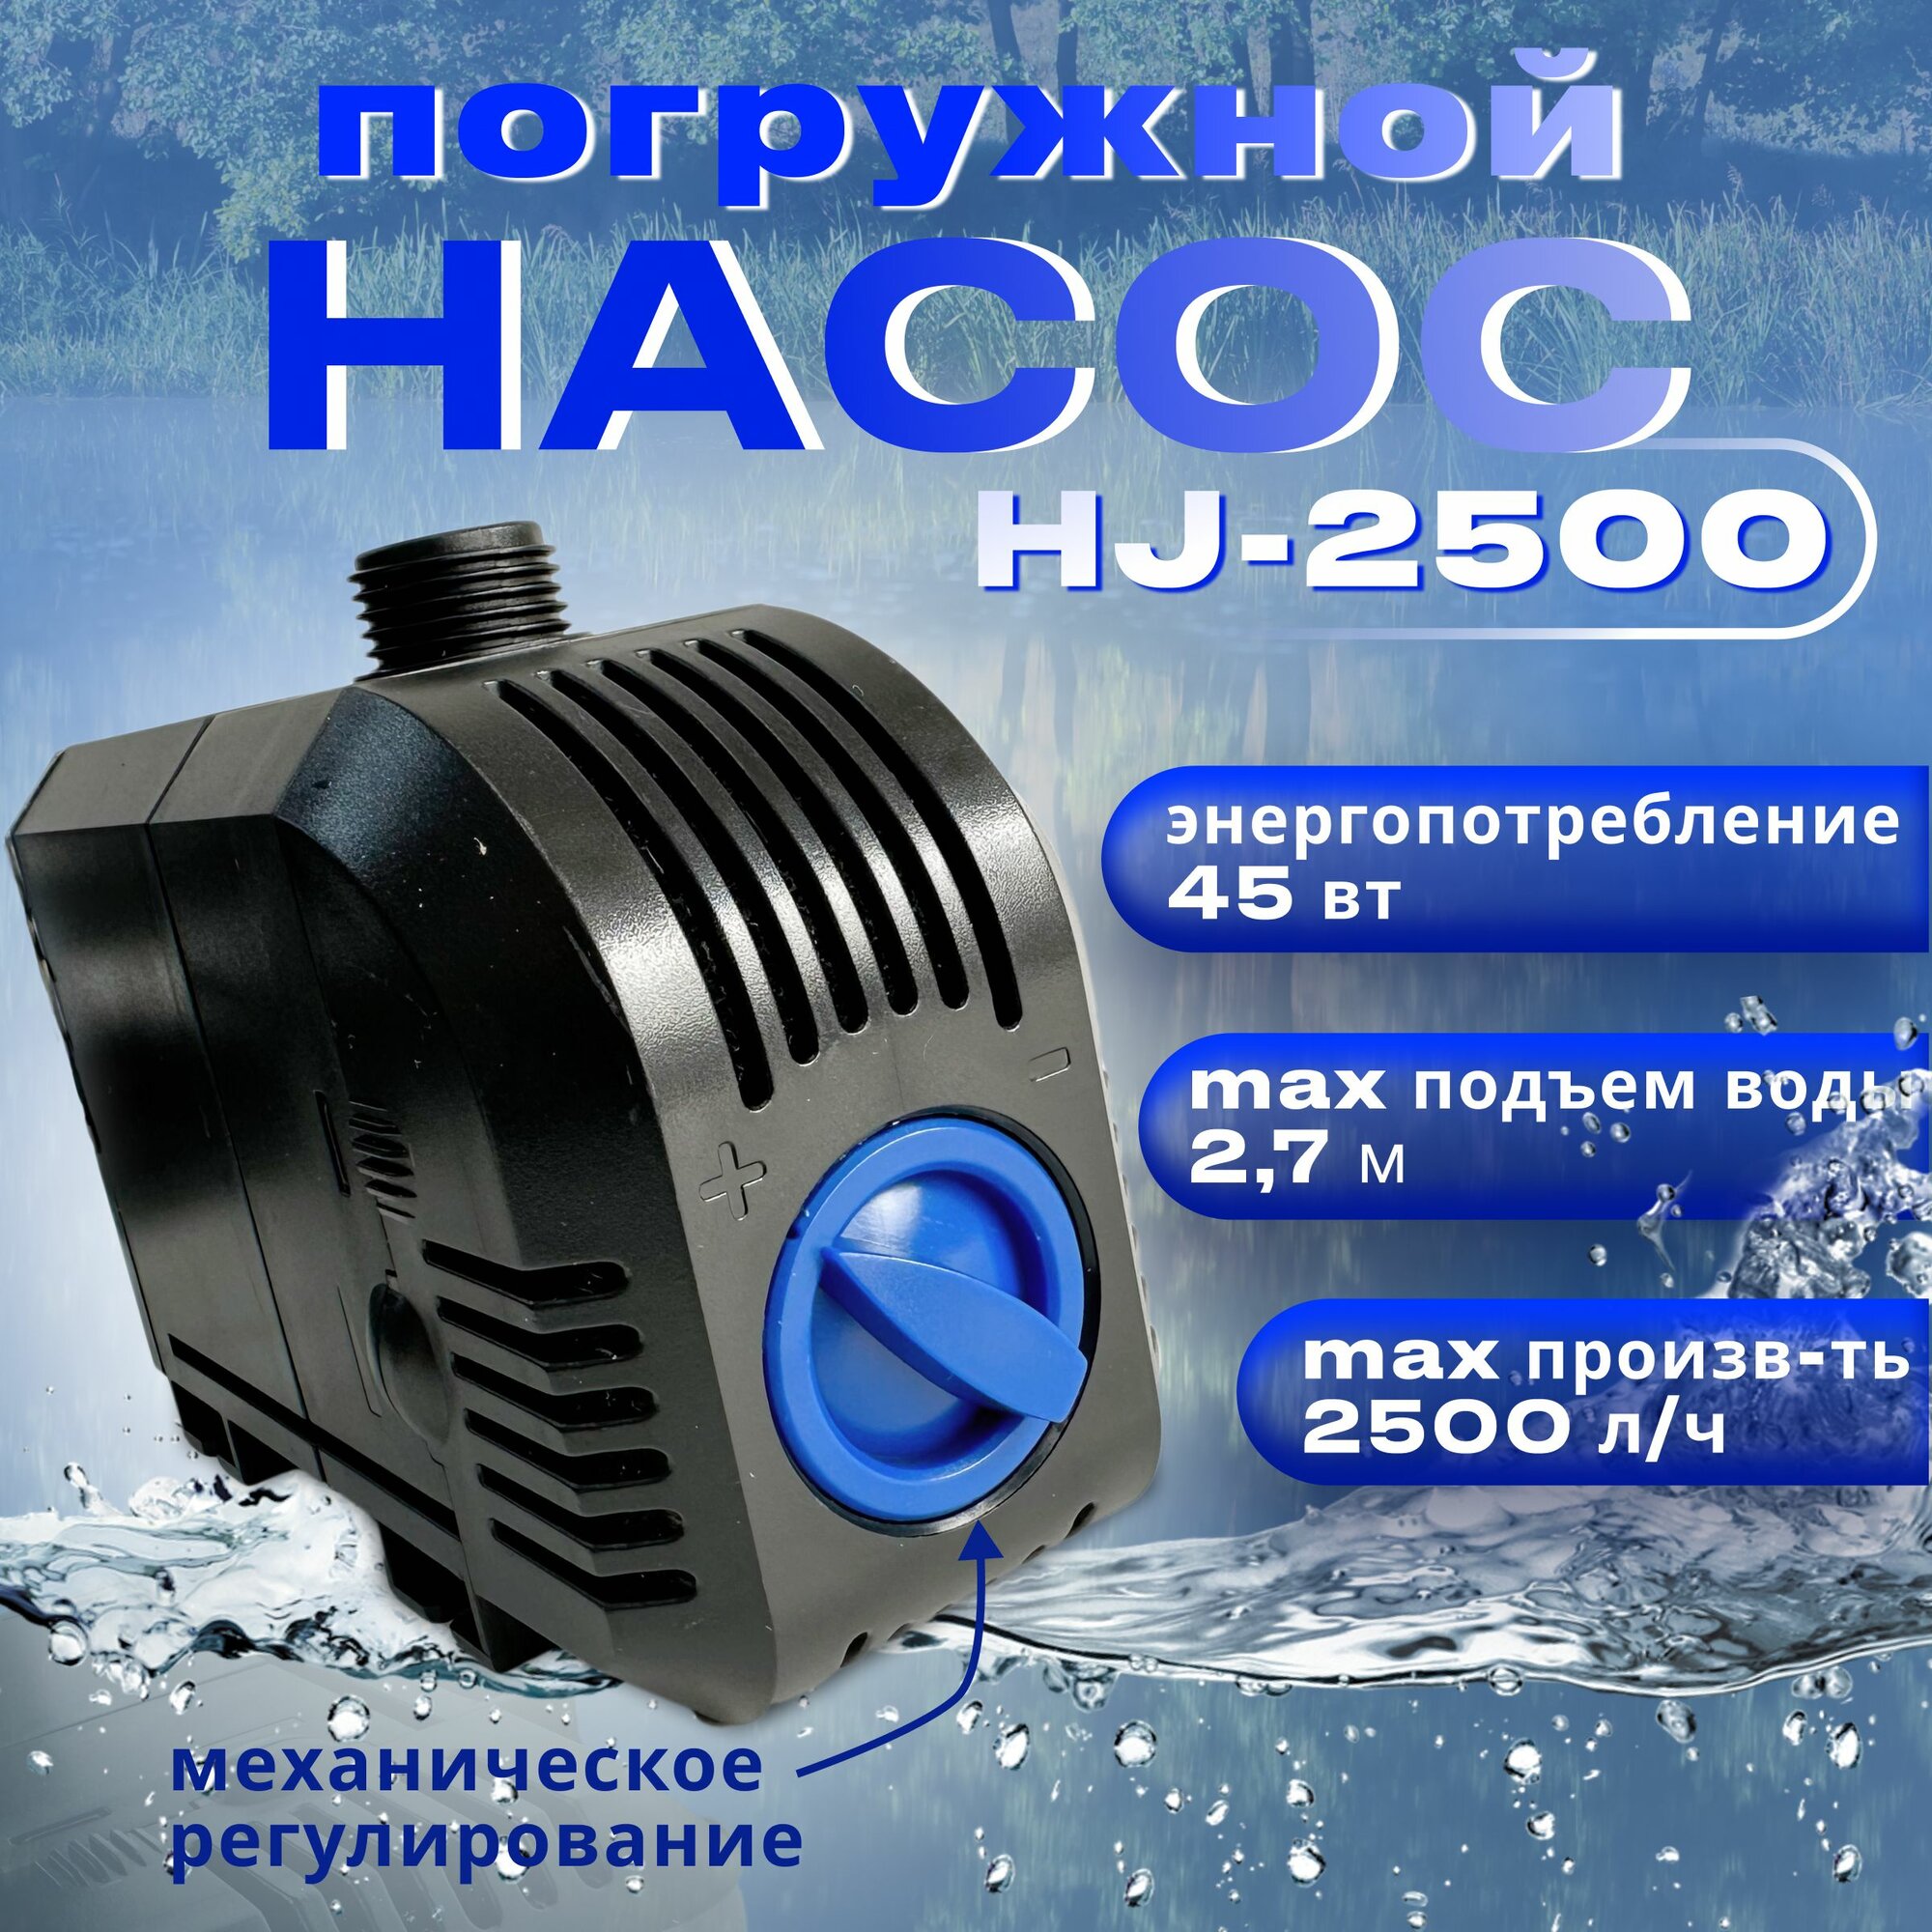 Насос для фонтана погружной SunSun HJ 2500, длина кабеля 8м, производительность 2500 л/час